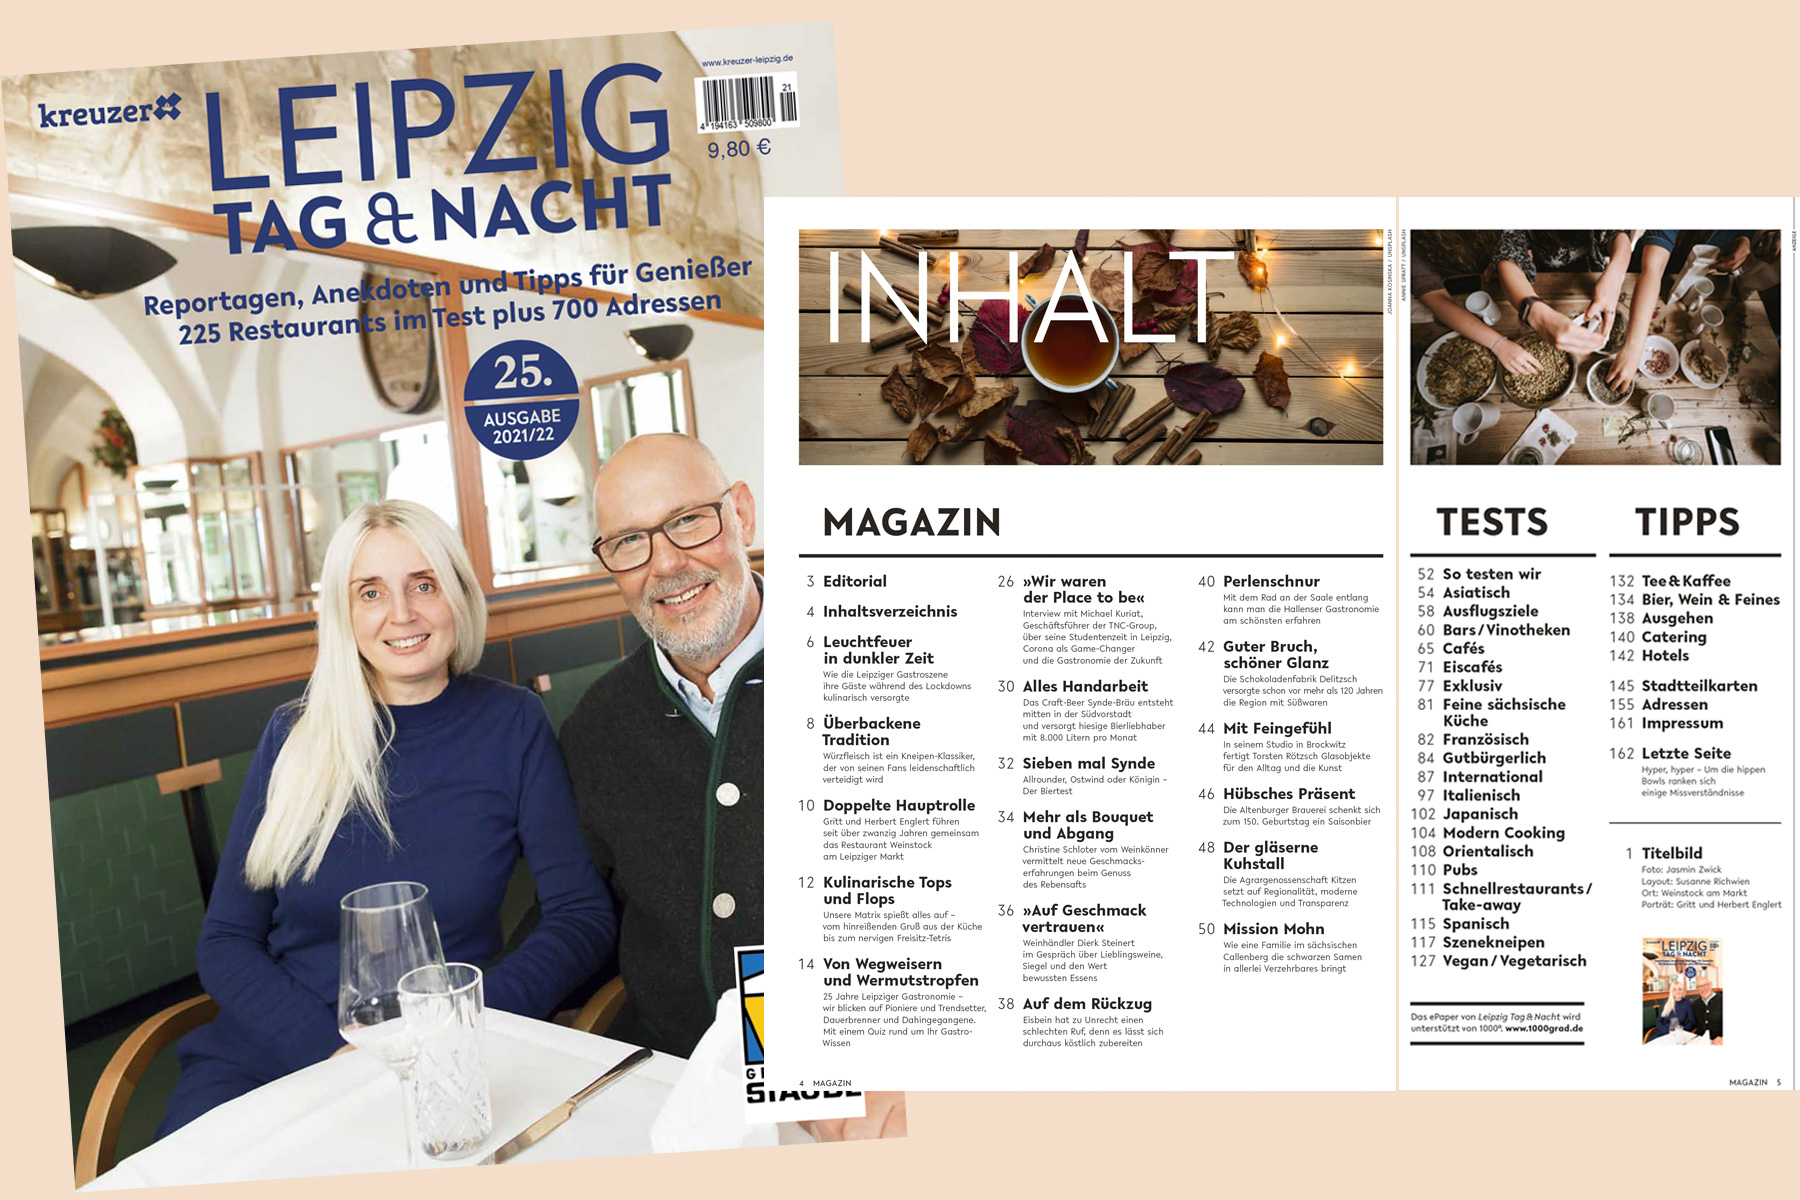   Leipzig Tag & Nacht ist 25 1/2 geworden | Editorial der aktuell erschienenen Jubiläumsausgabe 2021/22  